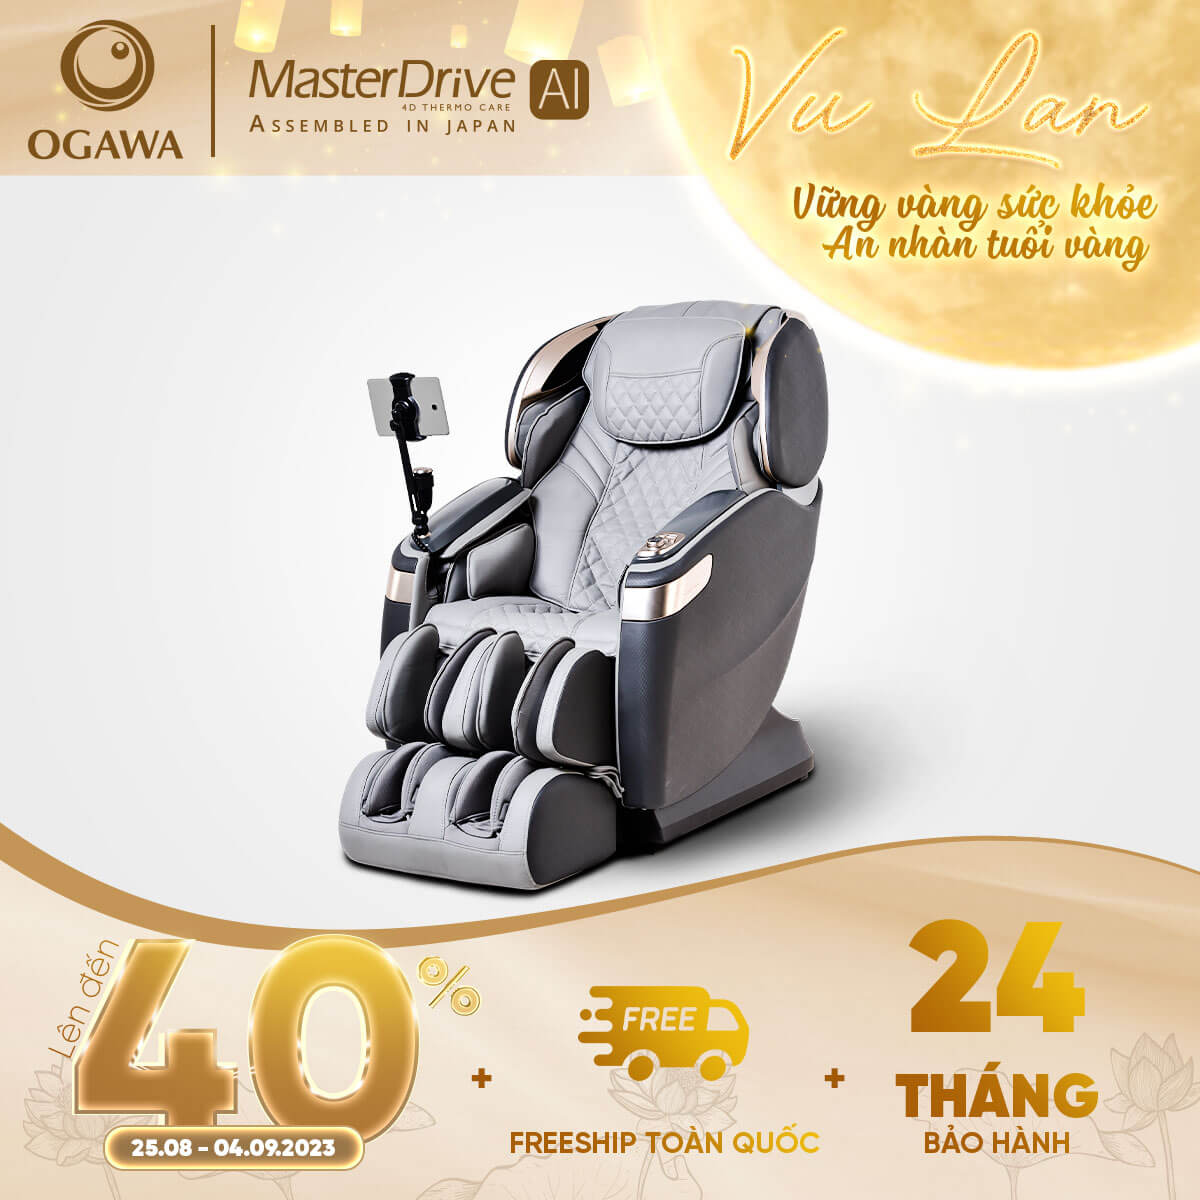 máy ghế massage ogawa dành cho người già 4D